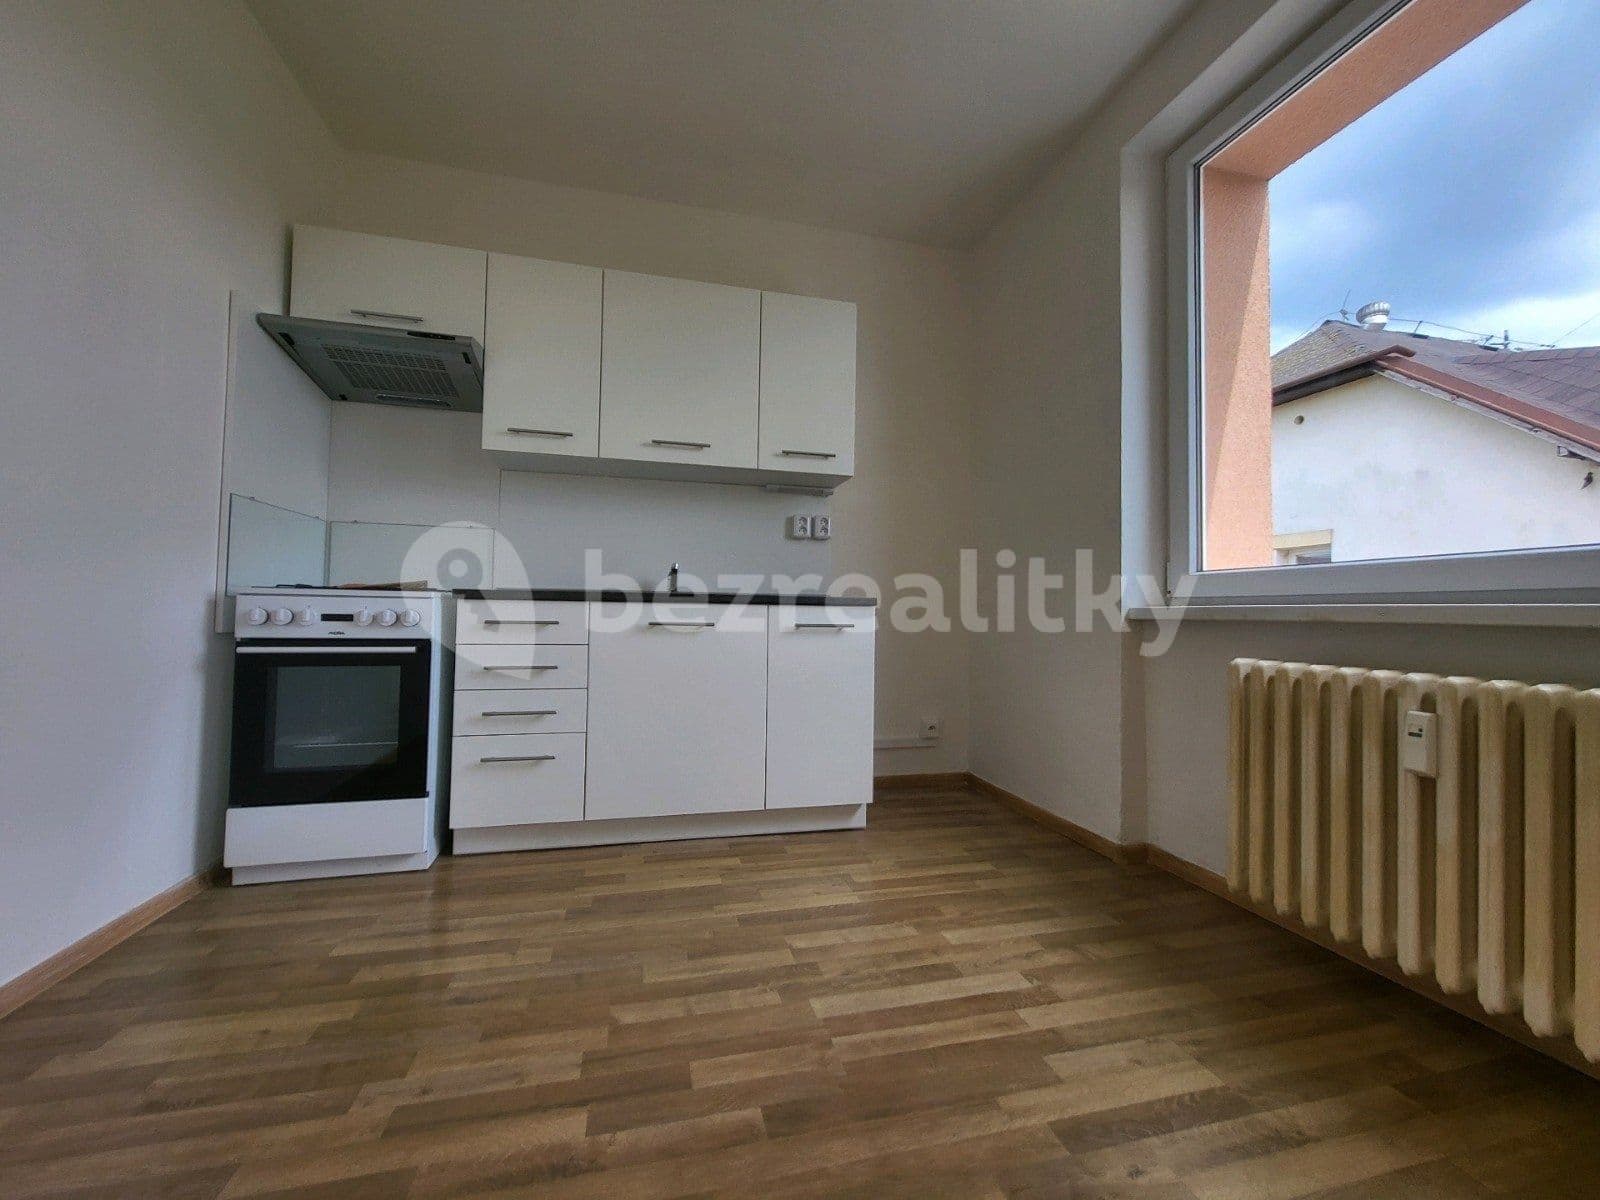 1 bedroom with open-plan kitchen flat to rent, 38 m², Dr. Glazera, Horní Suchá, Moravskoslezský Region